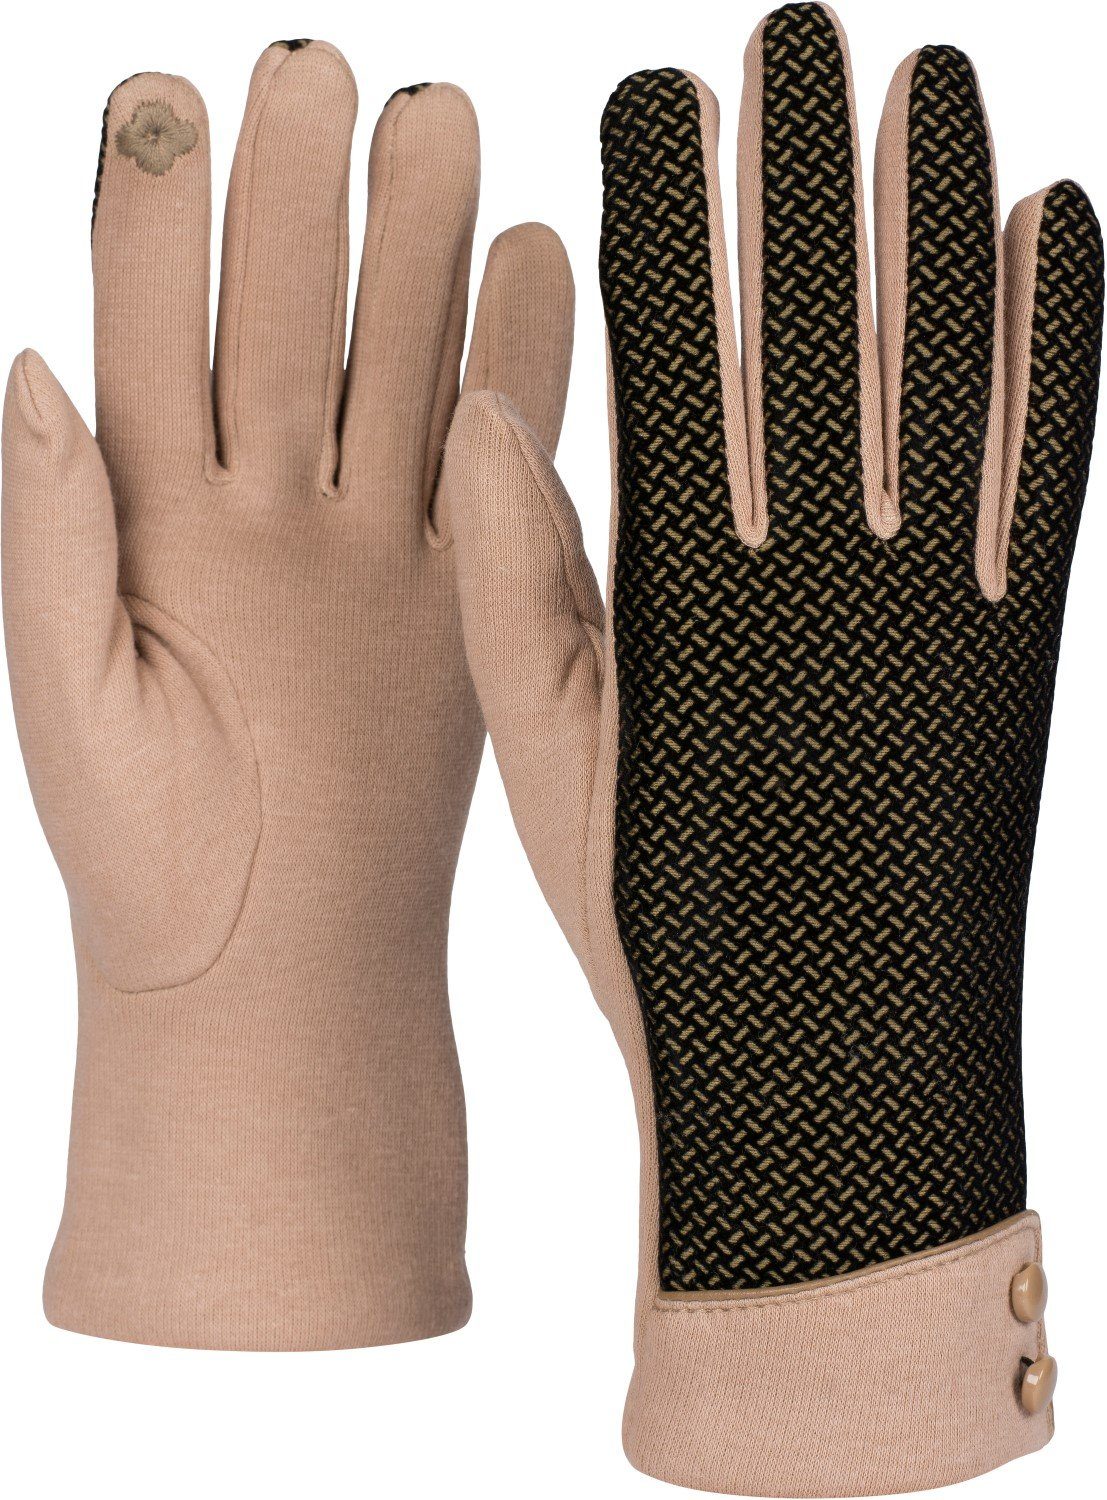 styleBREAKER Baumwollhandschuhe Touchscreen Handschuhe mit weichem Riffel Muster Hellbraun